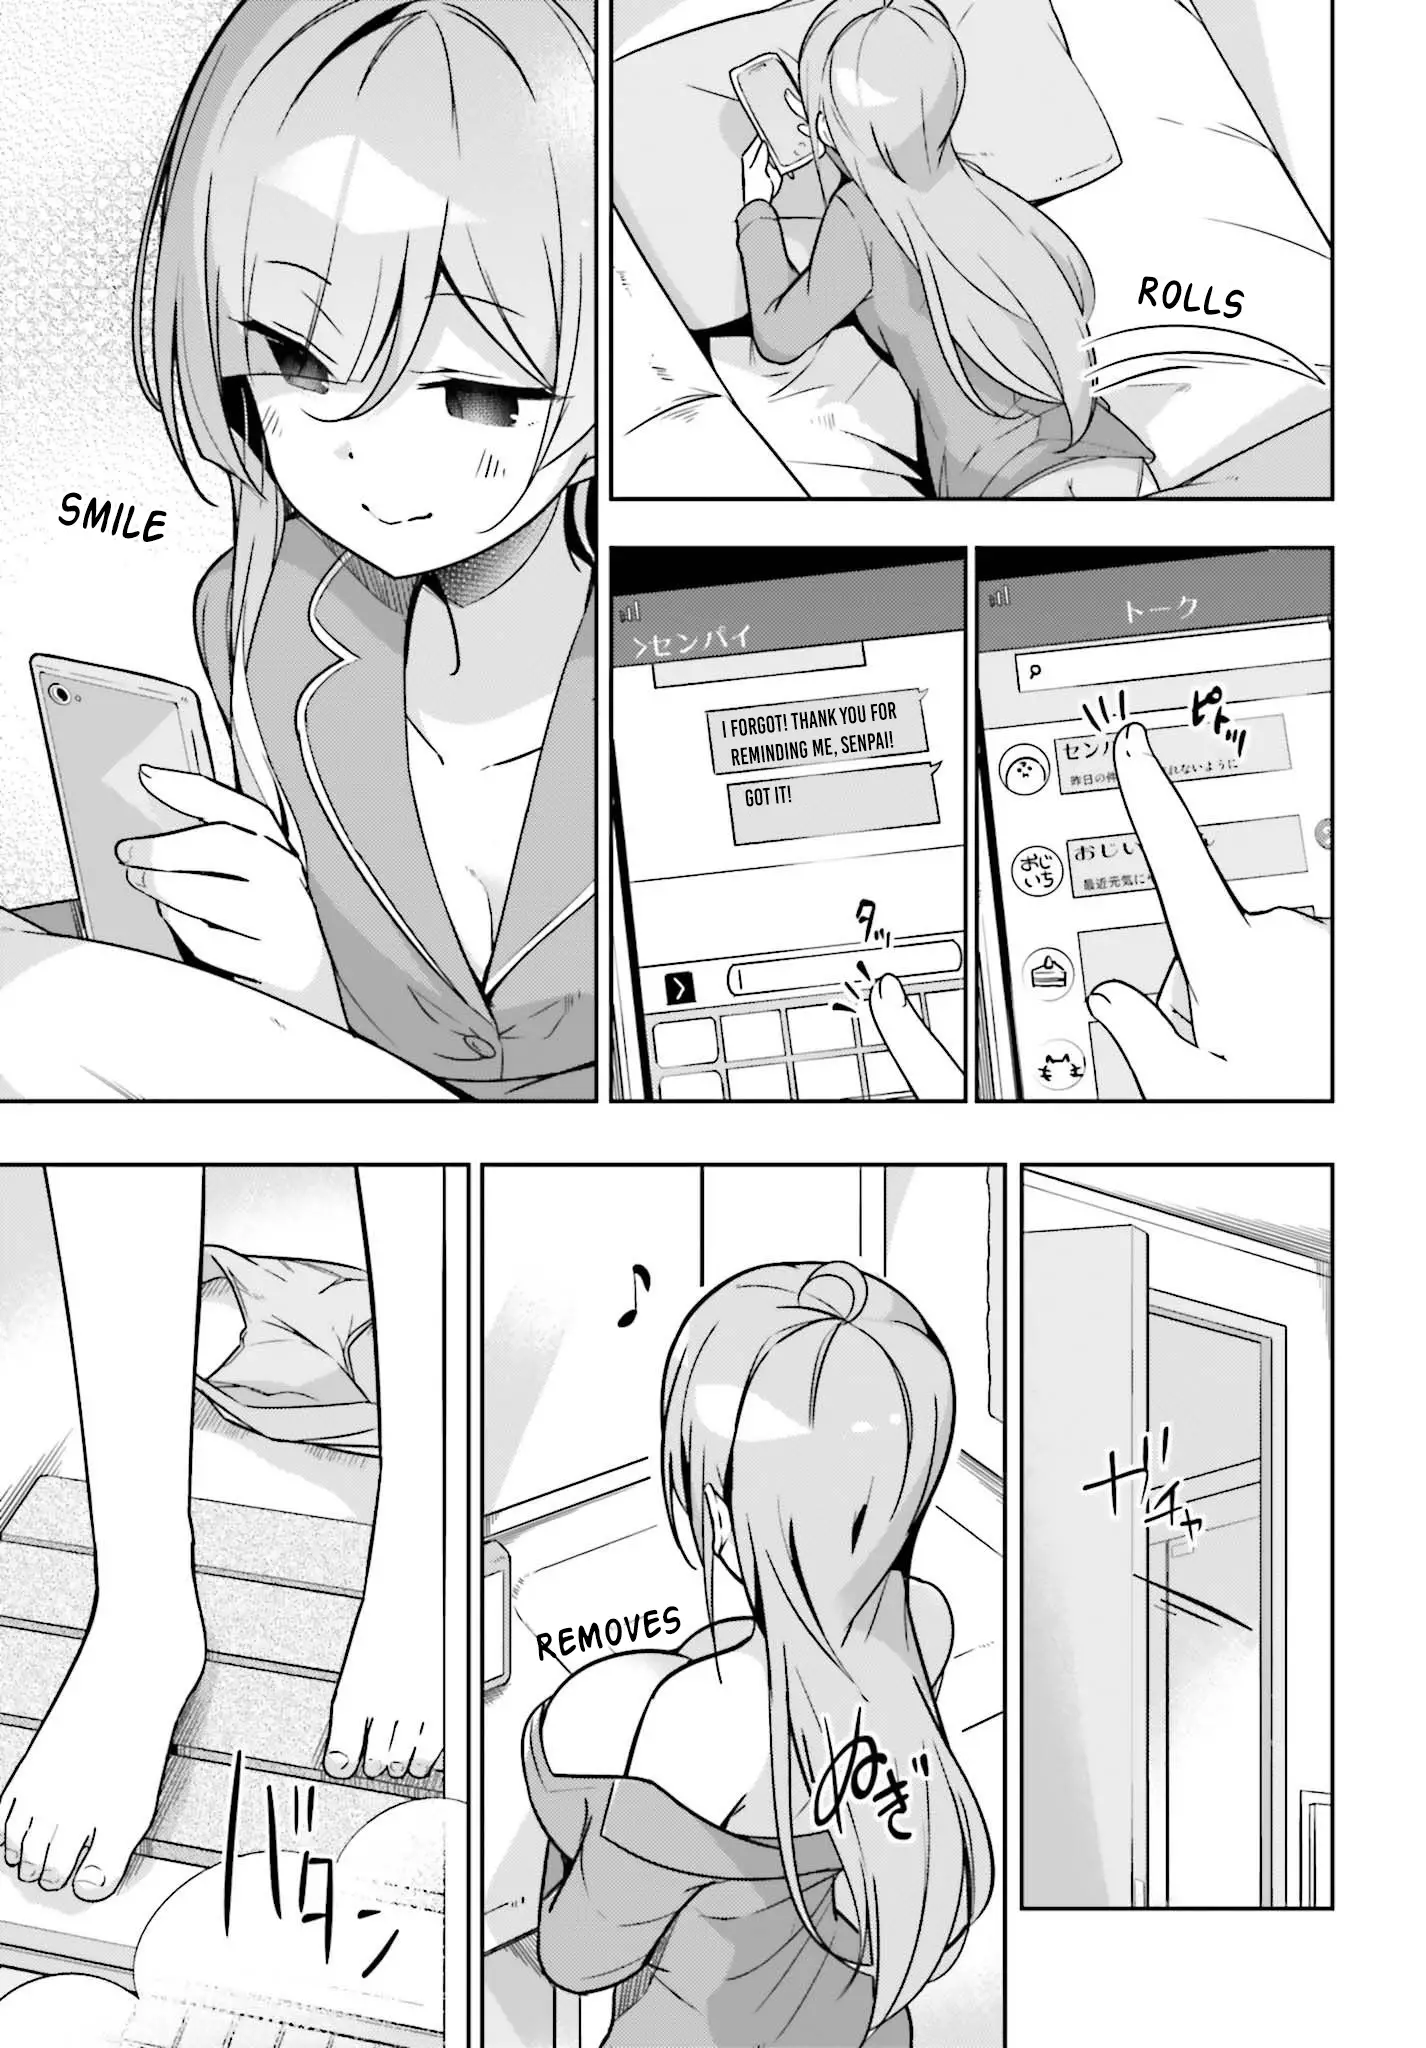 Senpai! Let's Have An Office Romance ♪ - 7 page 3